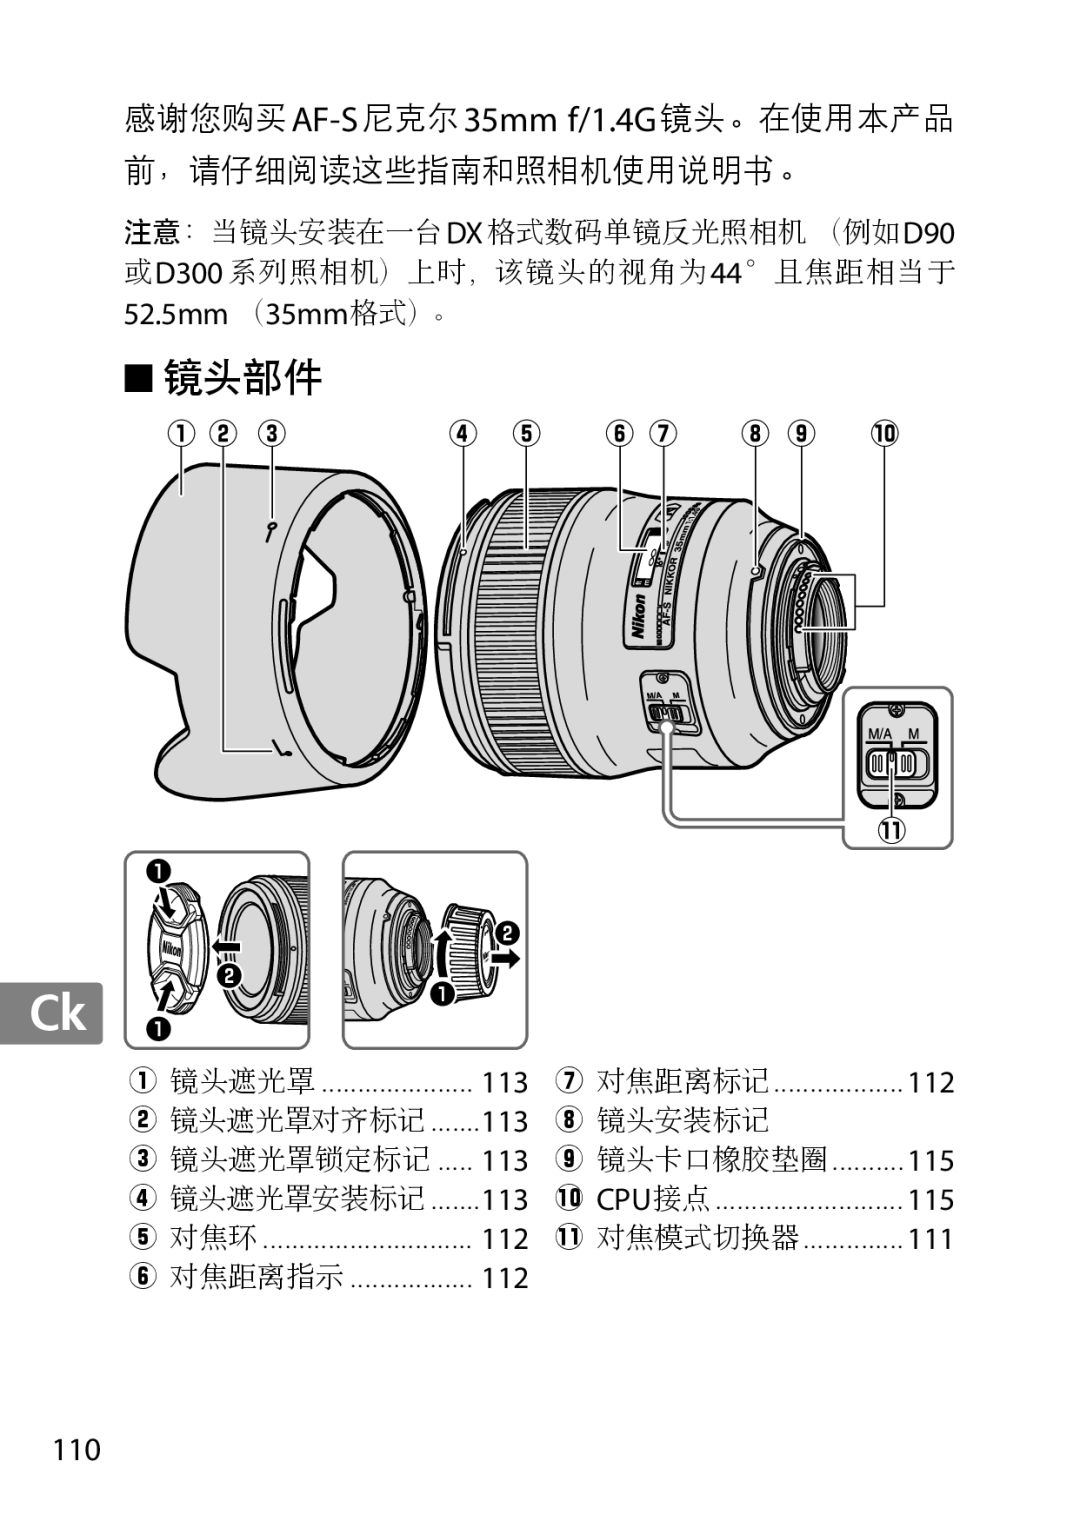 Nikon 35mm f/1.4G, AF-S, 35mmf14G, 2198 user manual 镜头部件, Jp En De Fr Es Sv Ru Nl It Cz Sk Ro Ua Ck Ch Kr, 52.5mm （35mm格式）。 